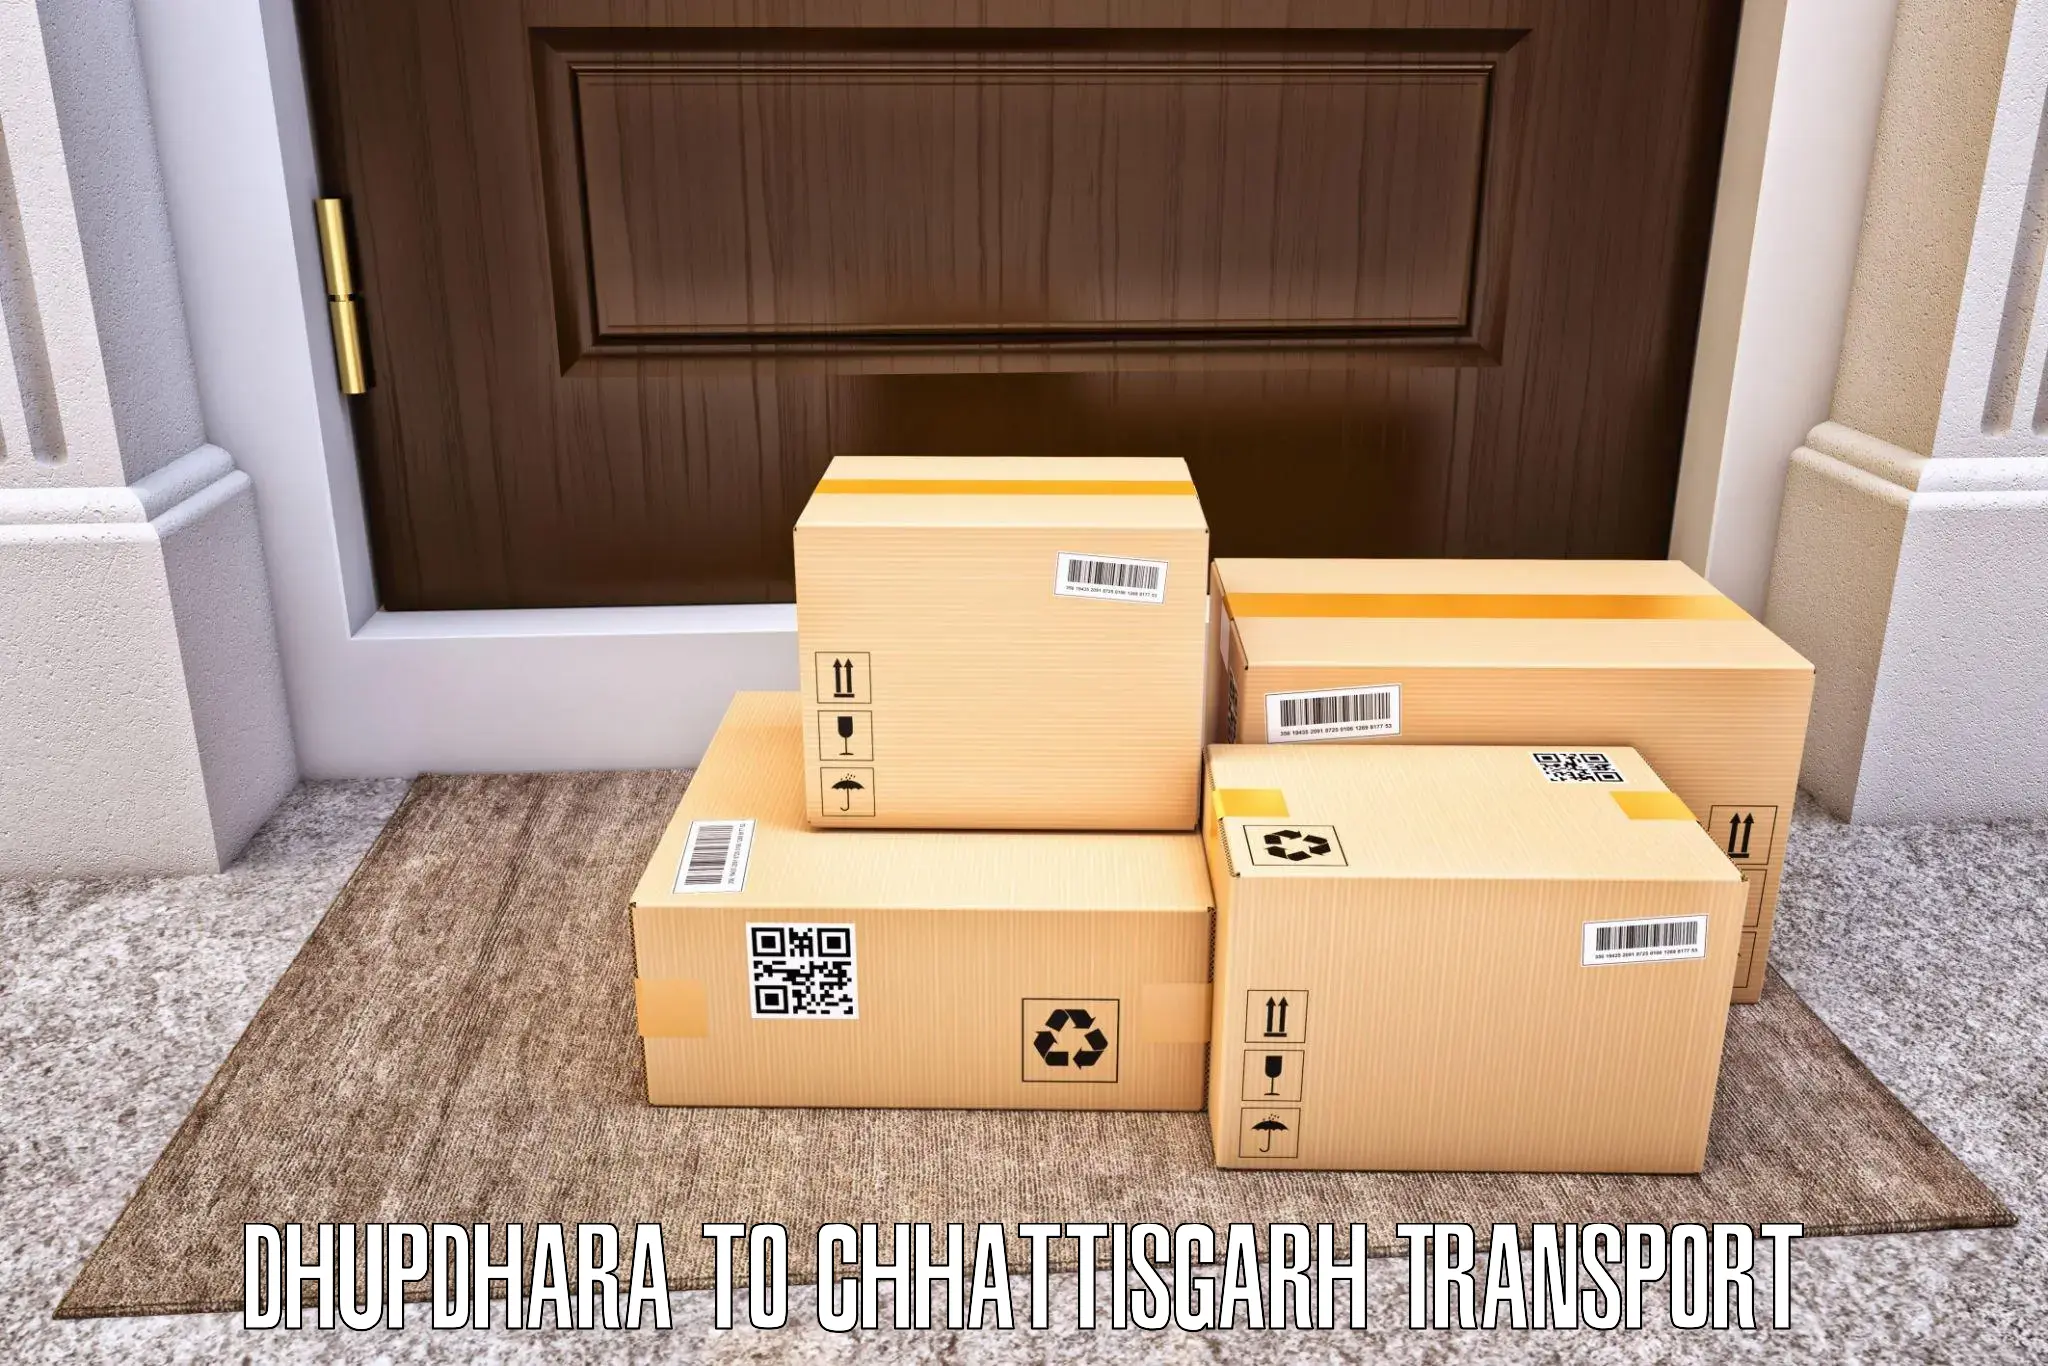 Online transport booking Dhupdhara to Sarangarh